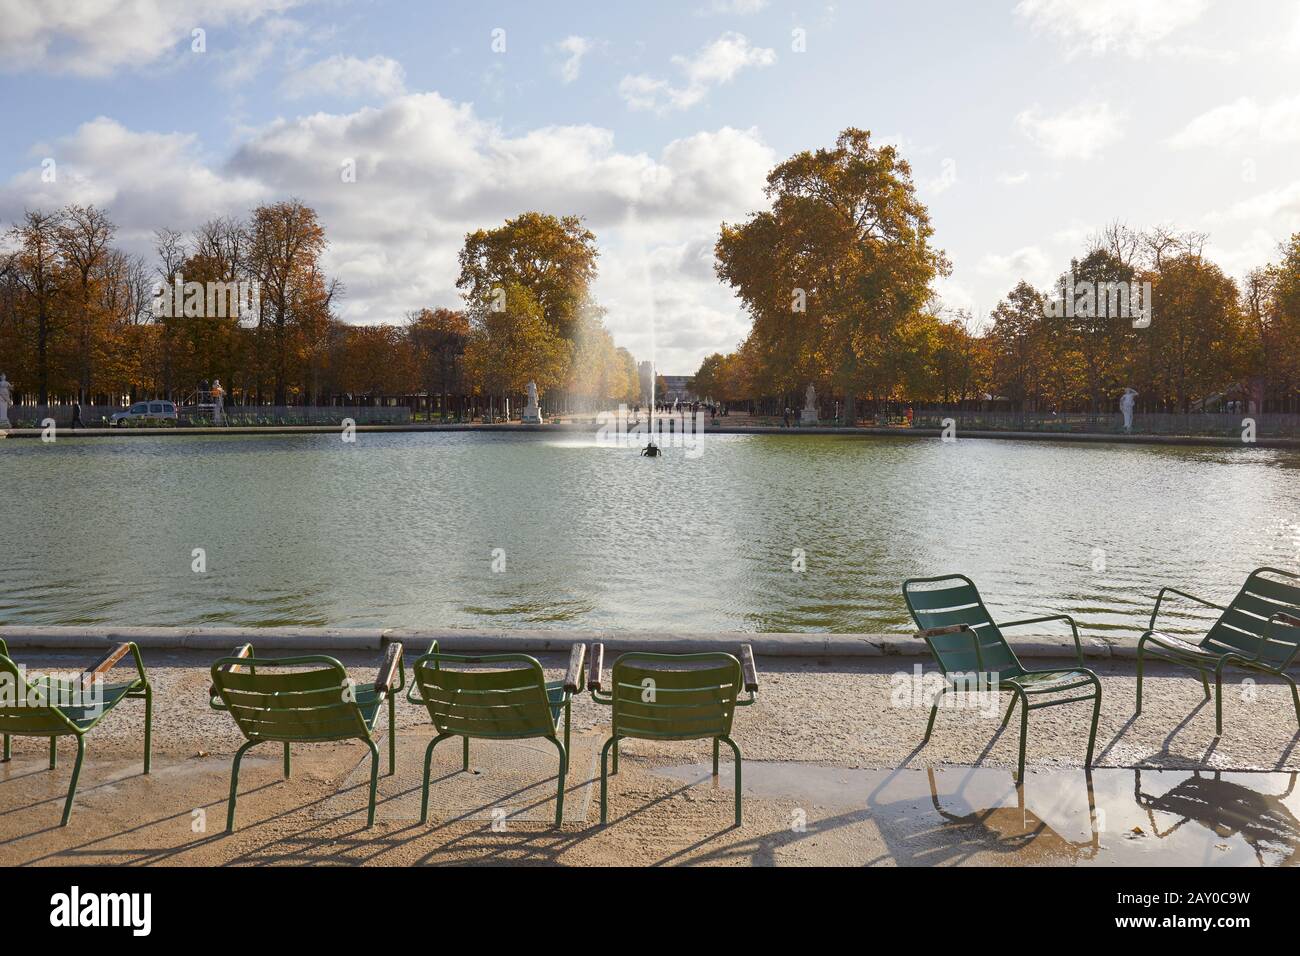 Paris - 7 NOVEMBRE 2019 : jardin des Tuileries avec chaises vertes et fontaine, automne ensoleillé à Paris Banque D'Images